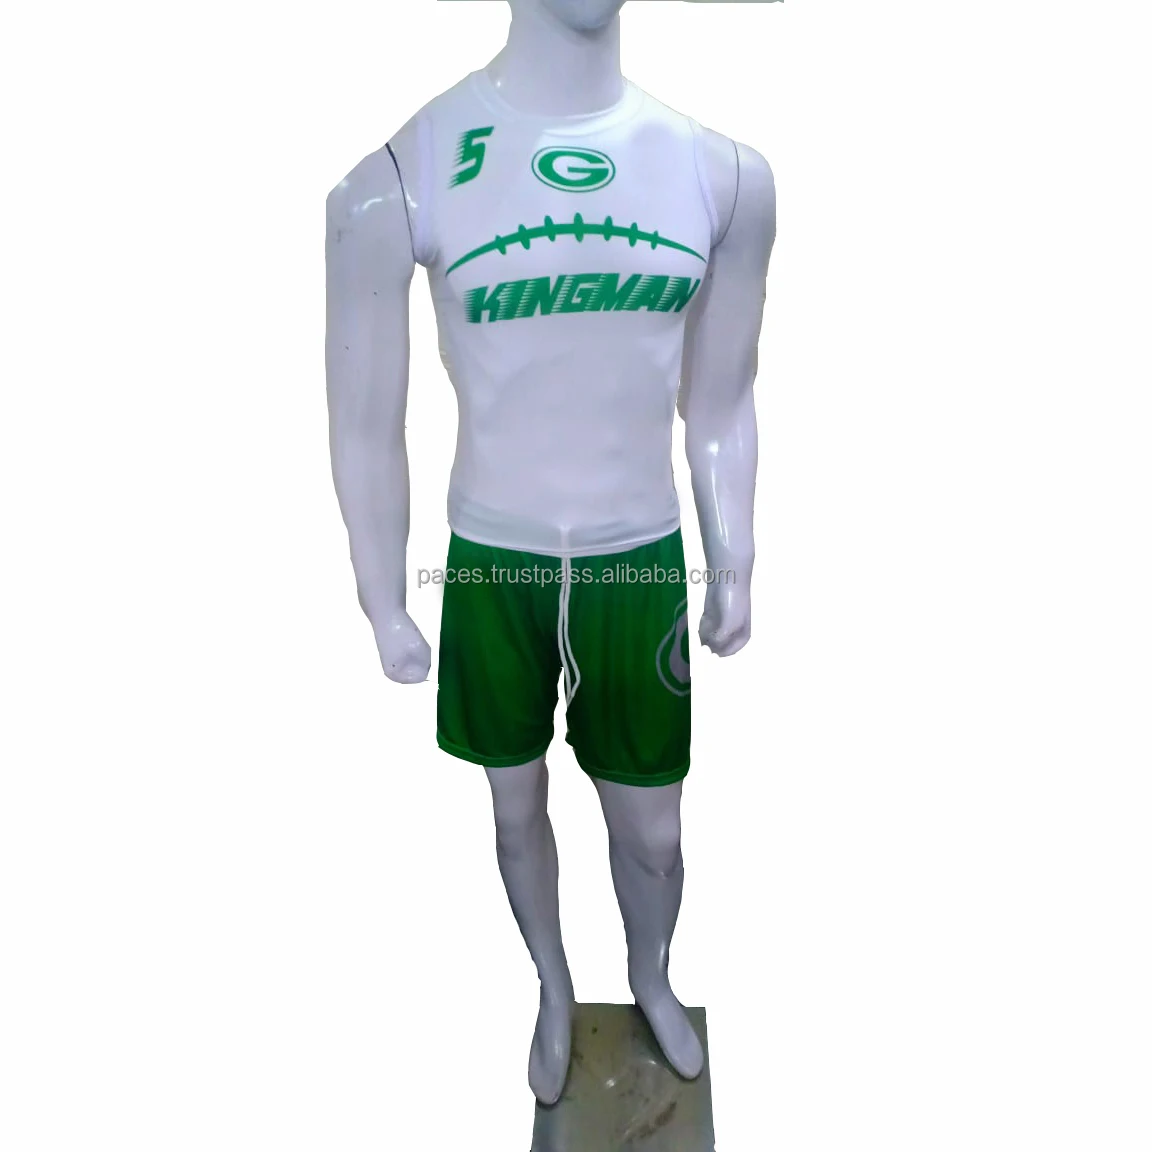 Football Compression Shorts & Shirts.